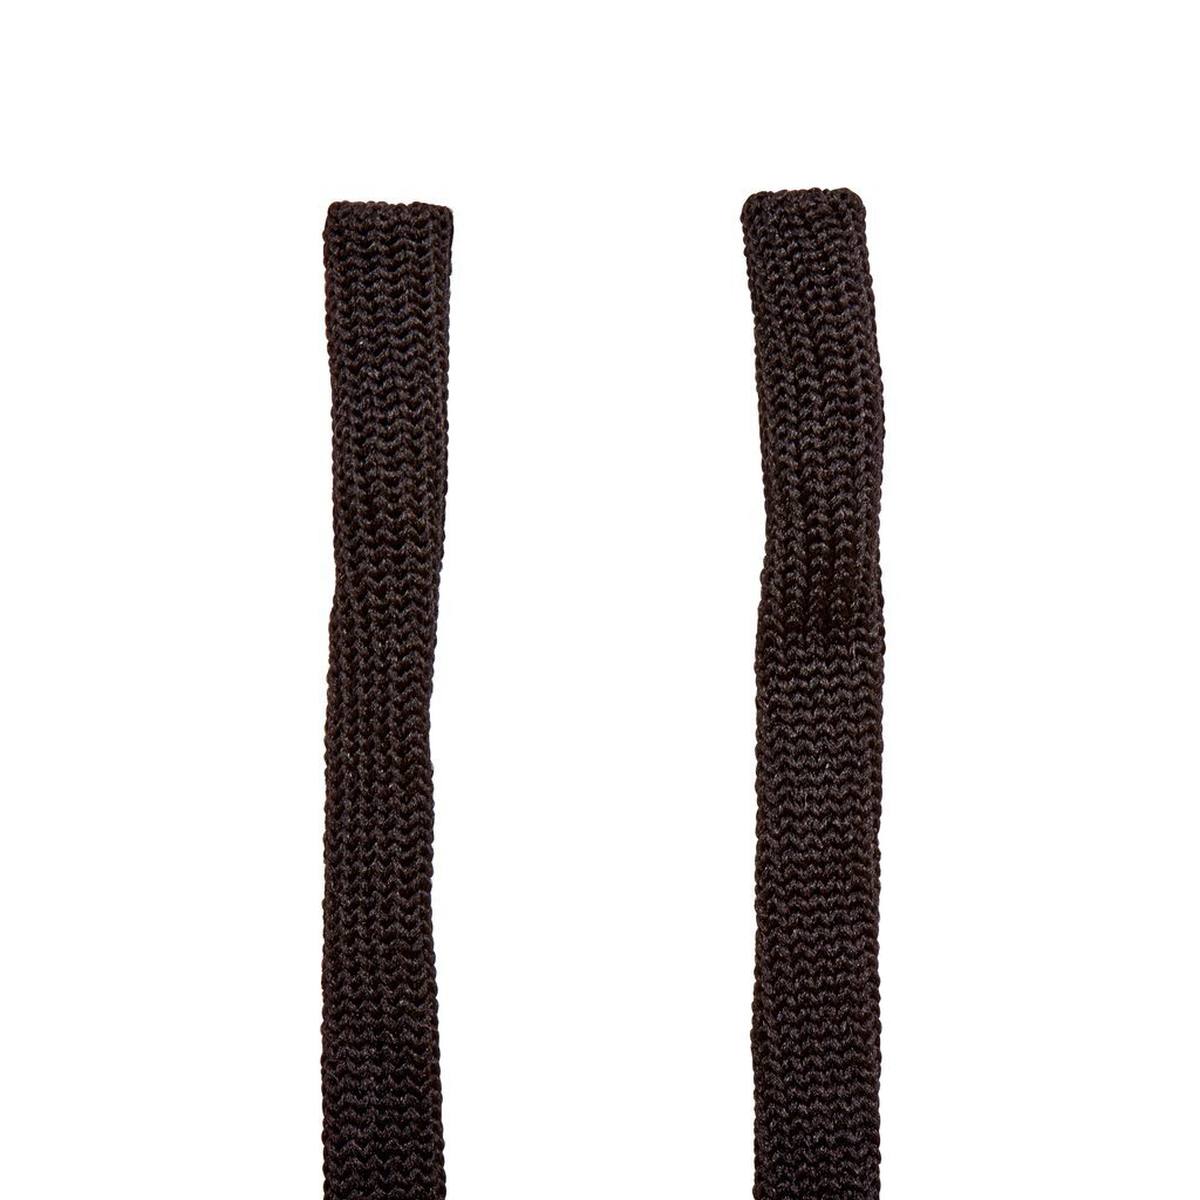 3M Cinturino per occhiali Cinturino regolabile in nylon, nero, strap1